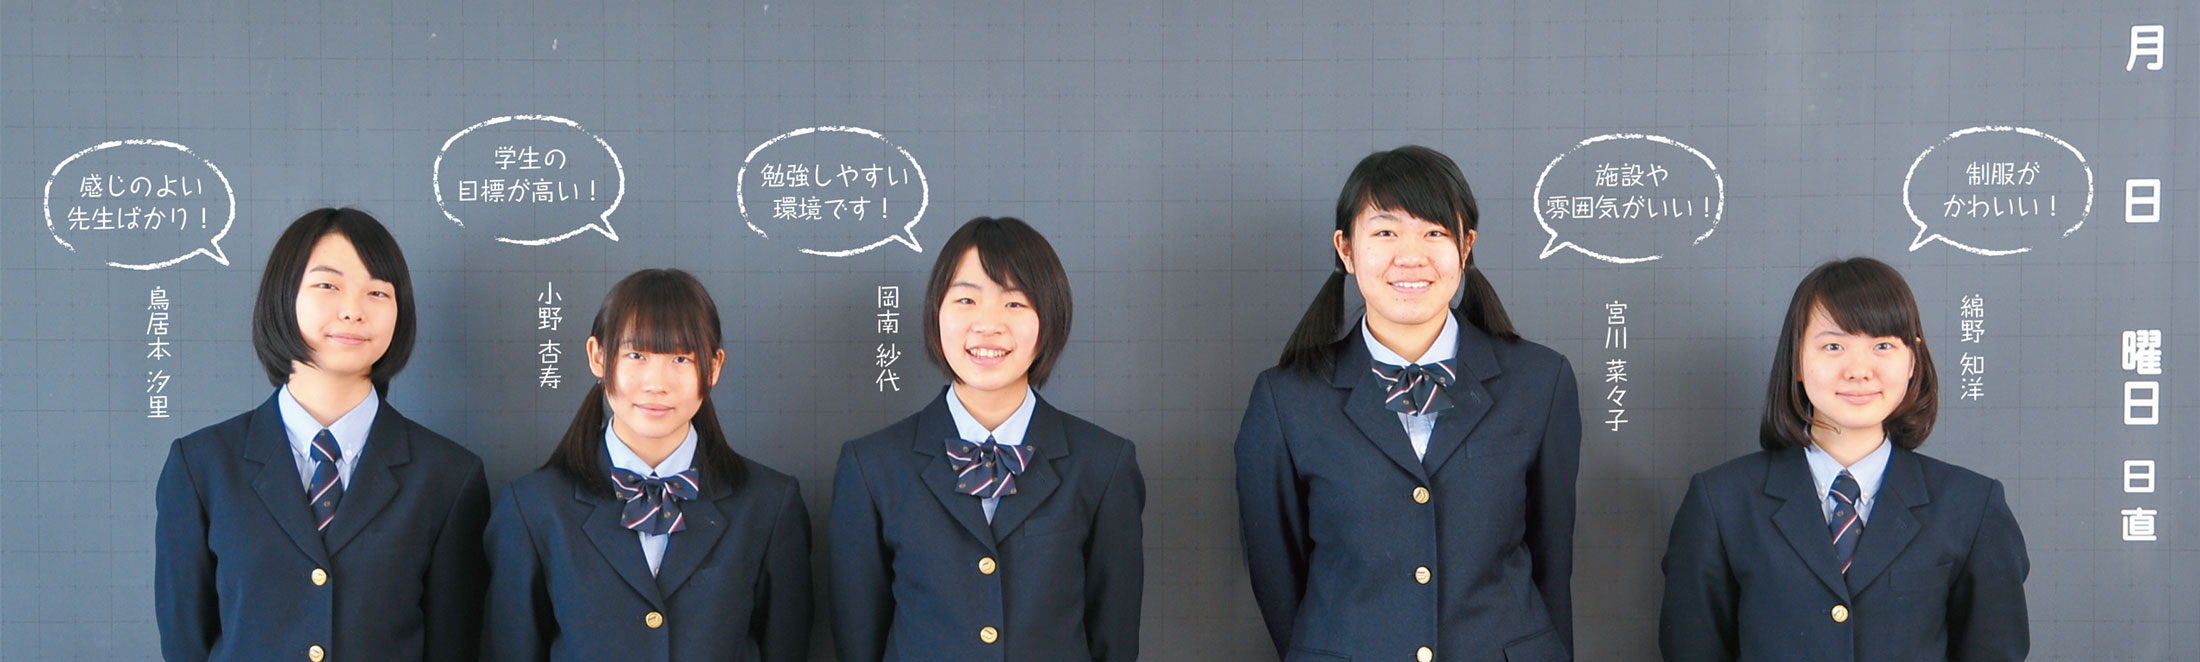 Nichikoma女子 日本工業大学駒場高校